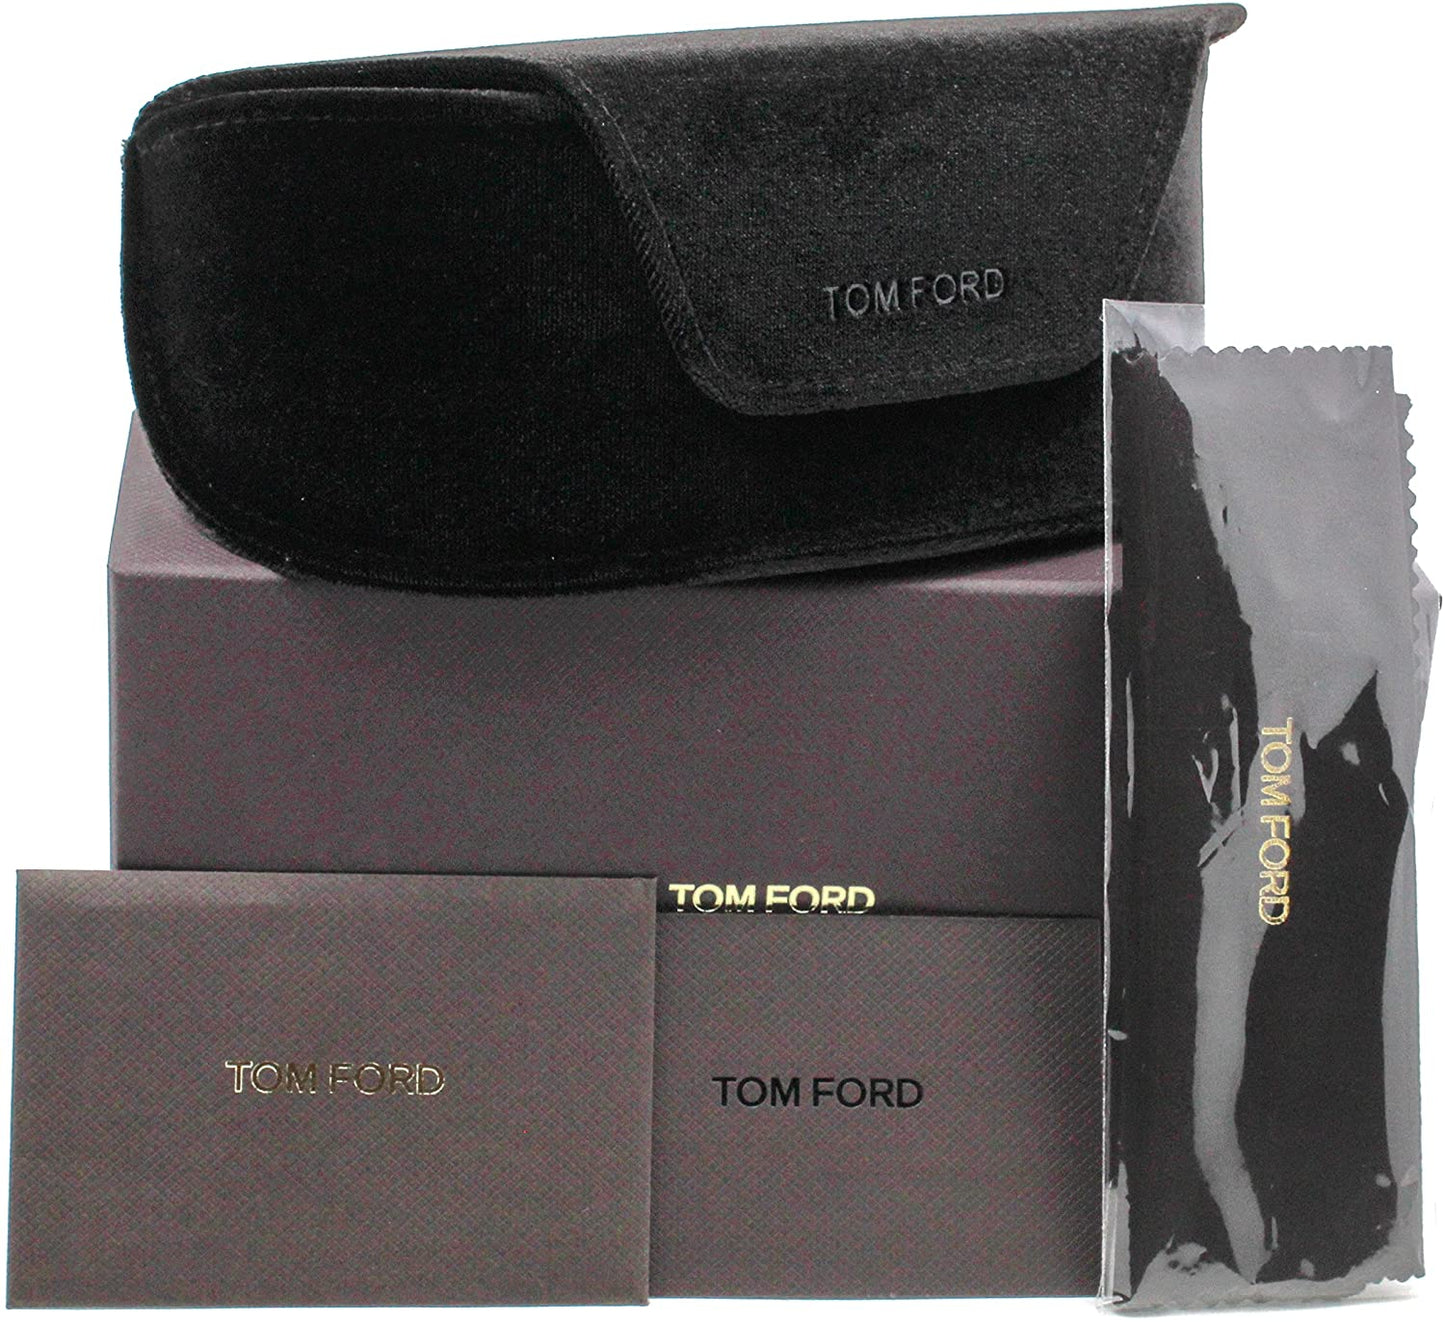 Tom Ford FT0518-52Z-58 58mm New Sunglasses